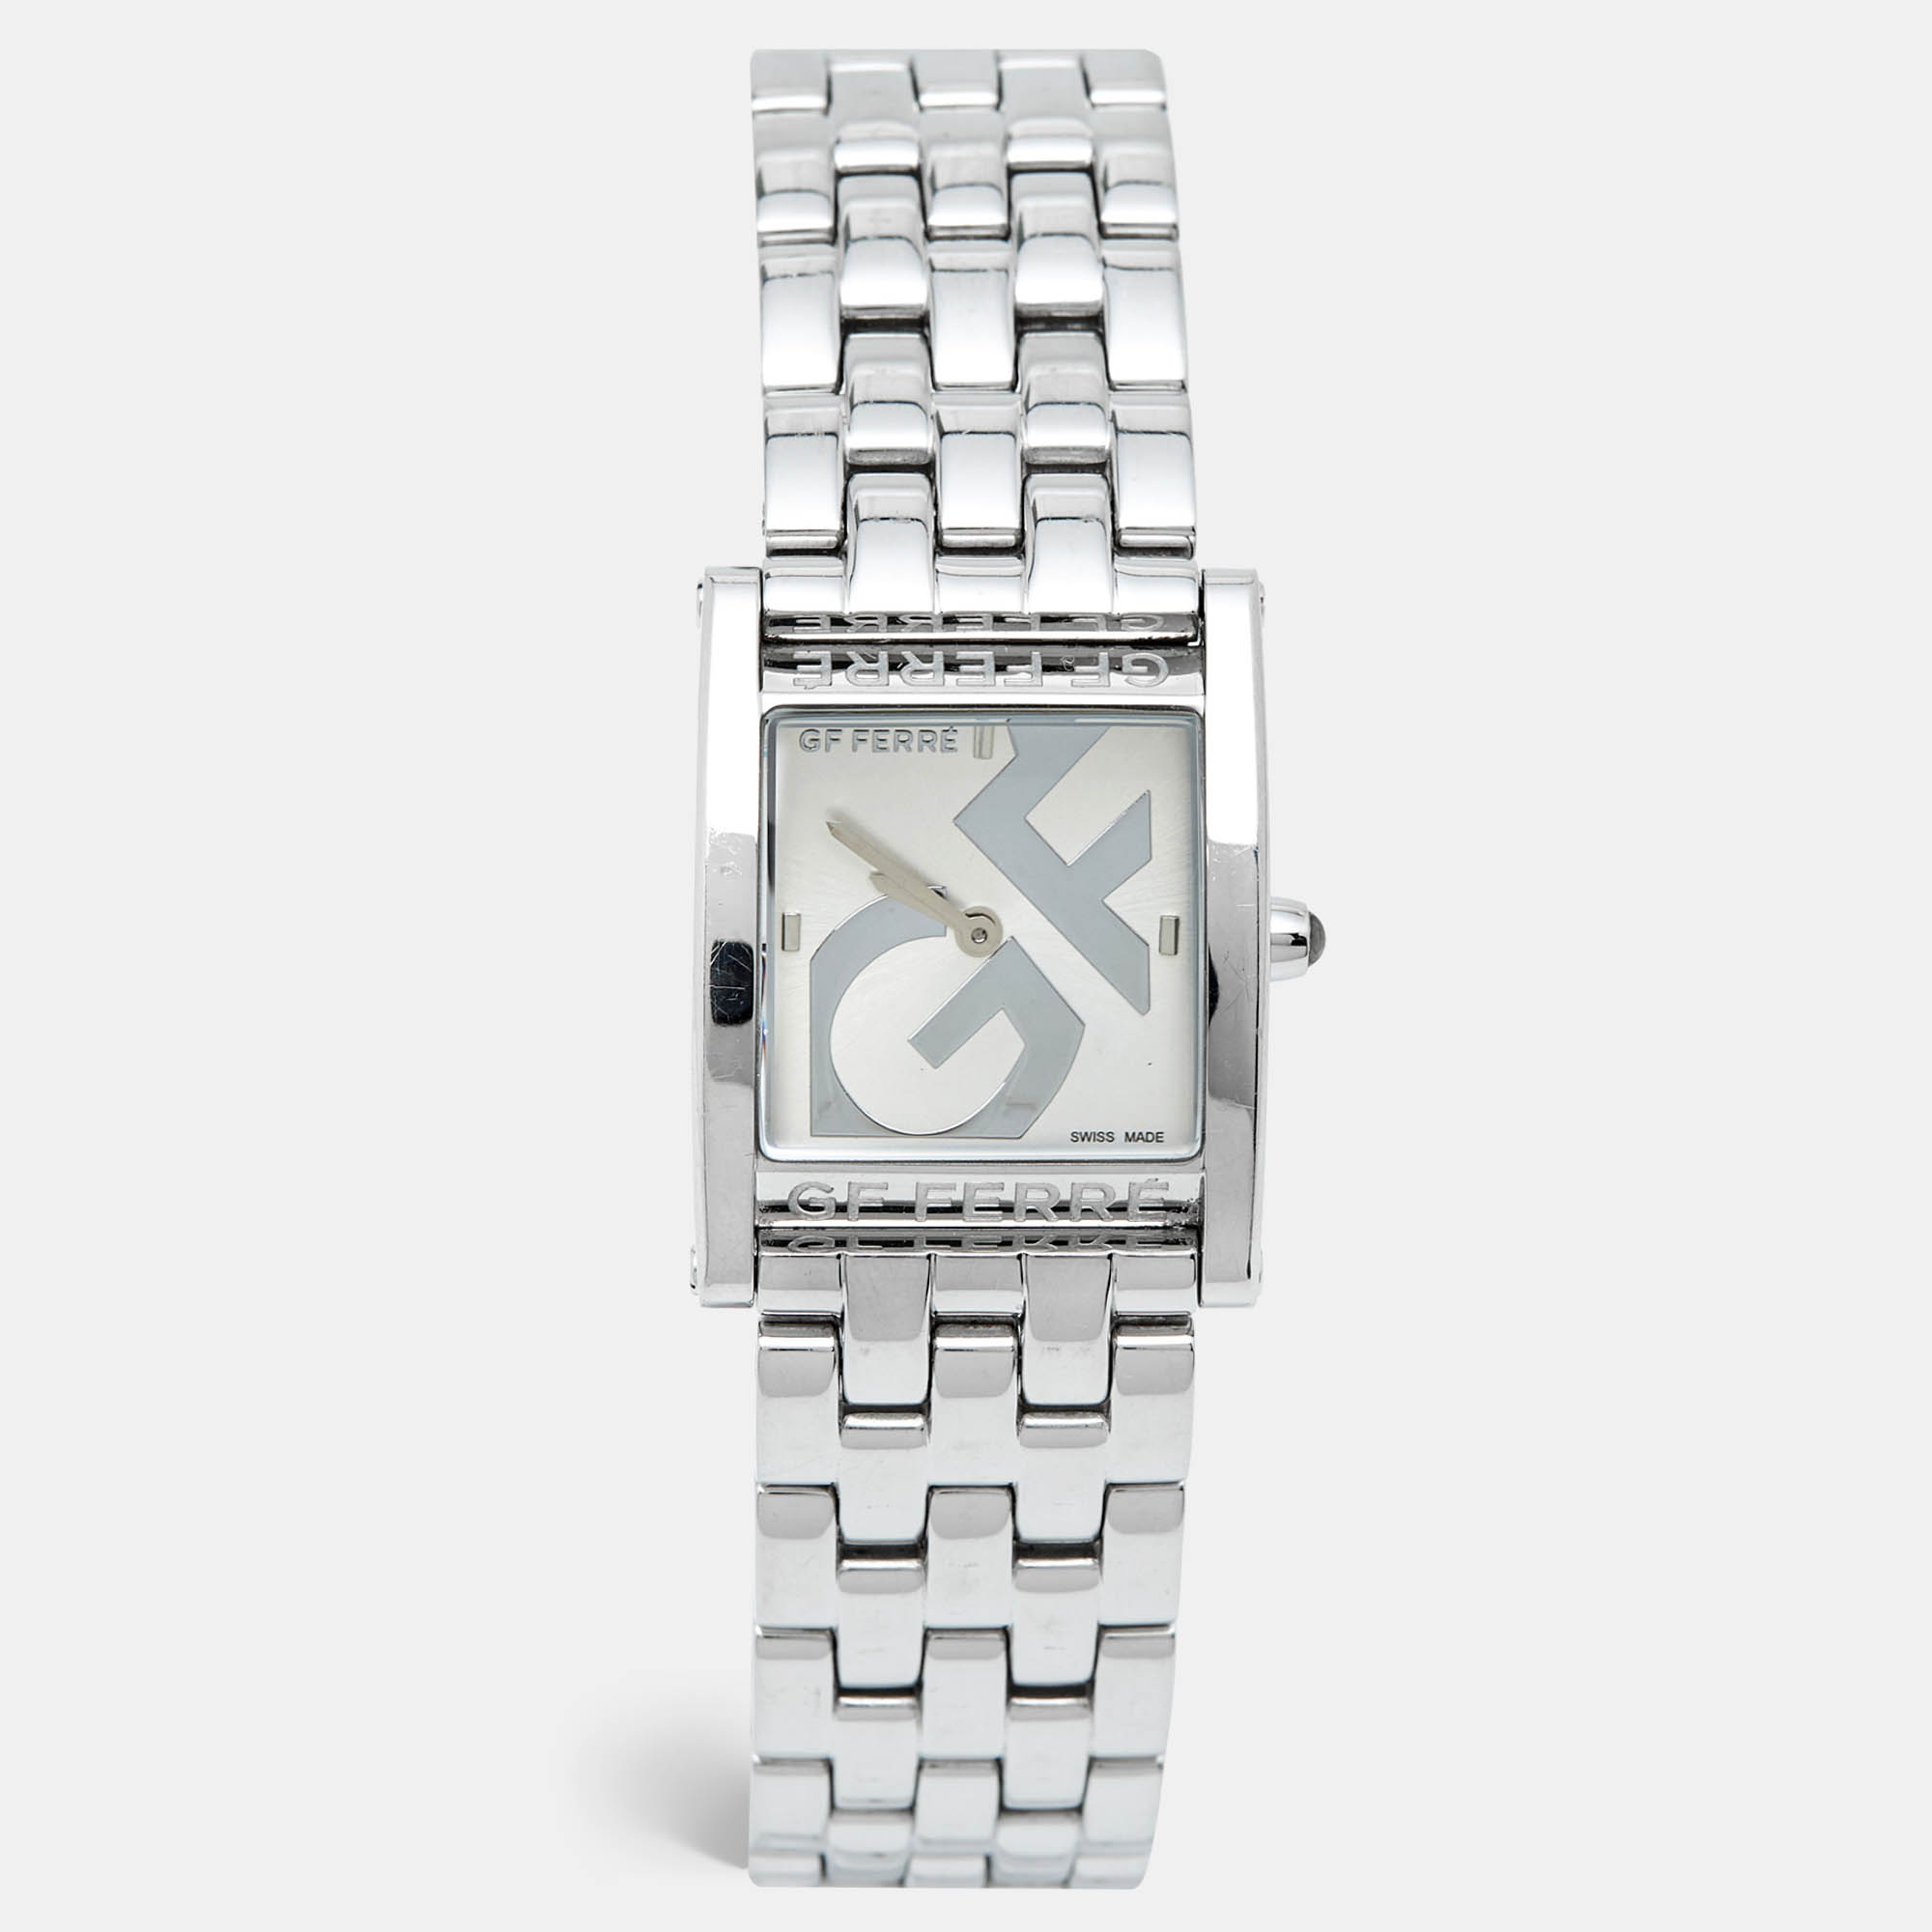 Gianfranco ferre gf ferre silver stainless steel gf.9017l women's wristwatch 26 mm